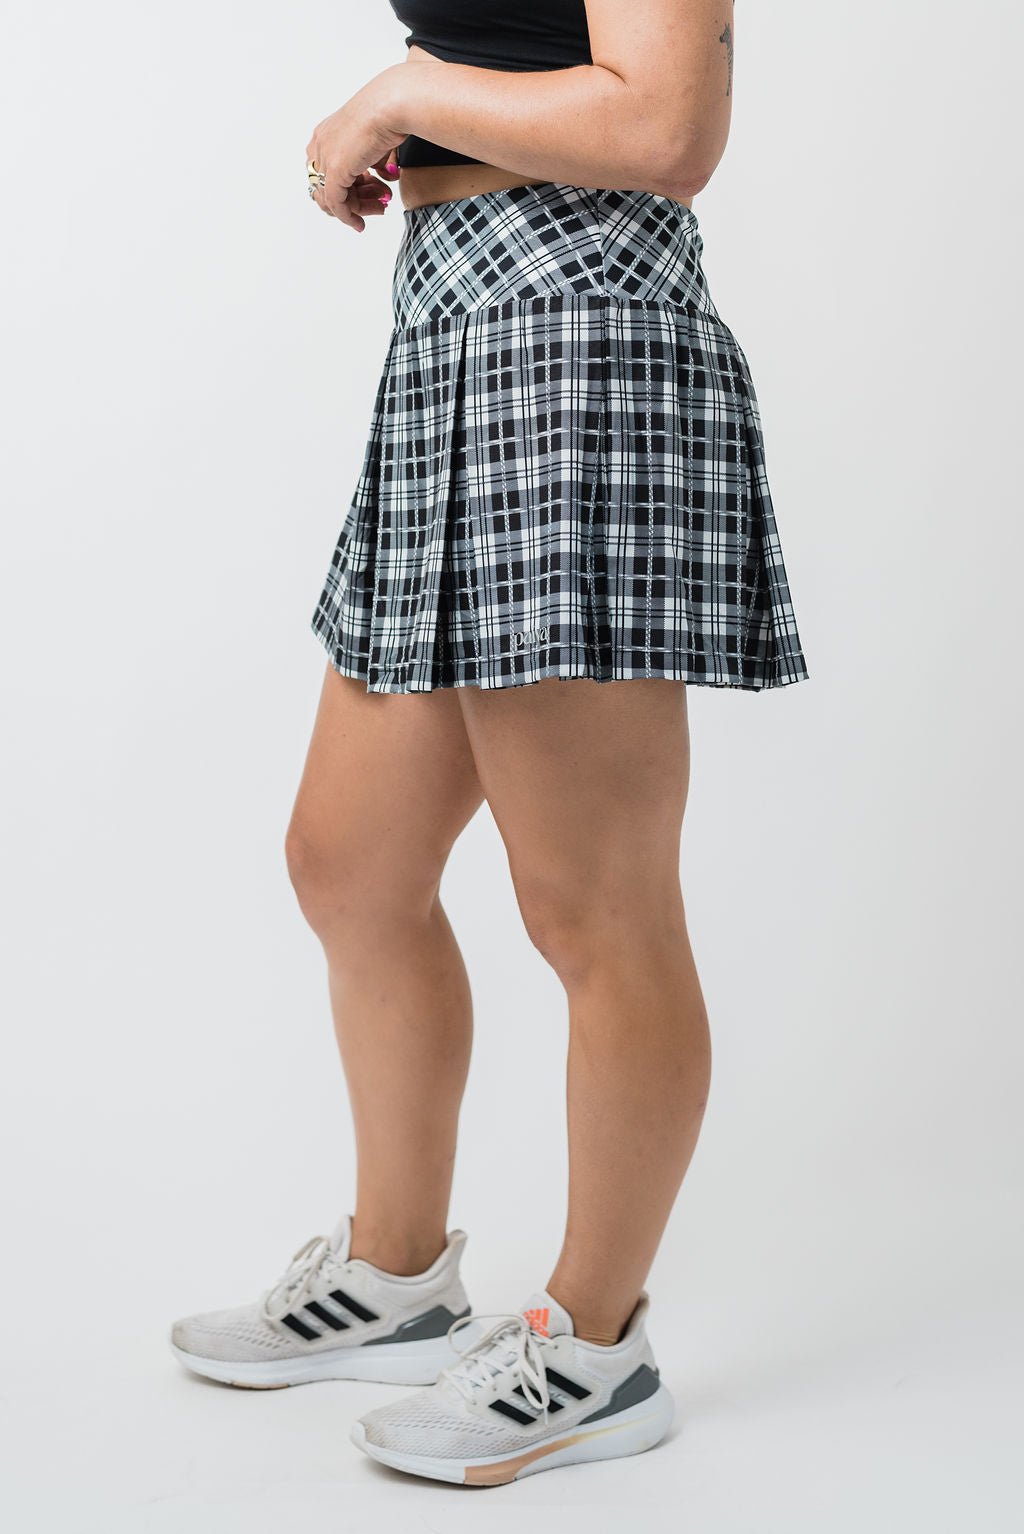 Varsity Skirt - Plaid